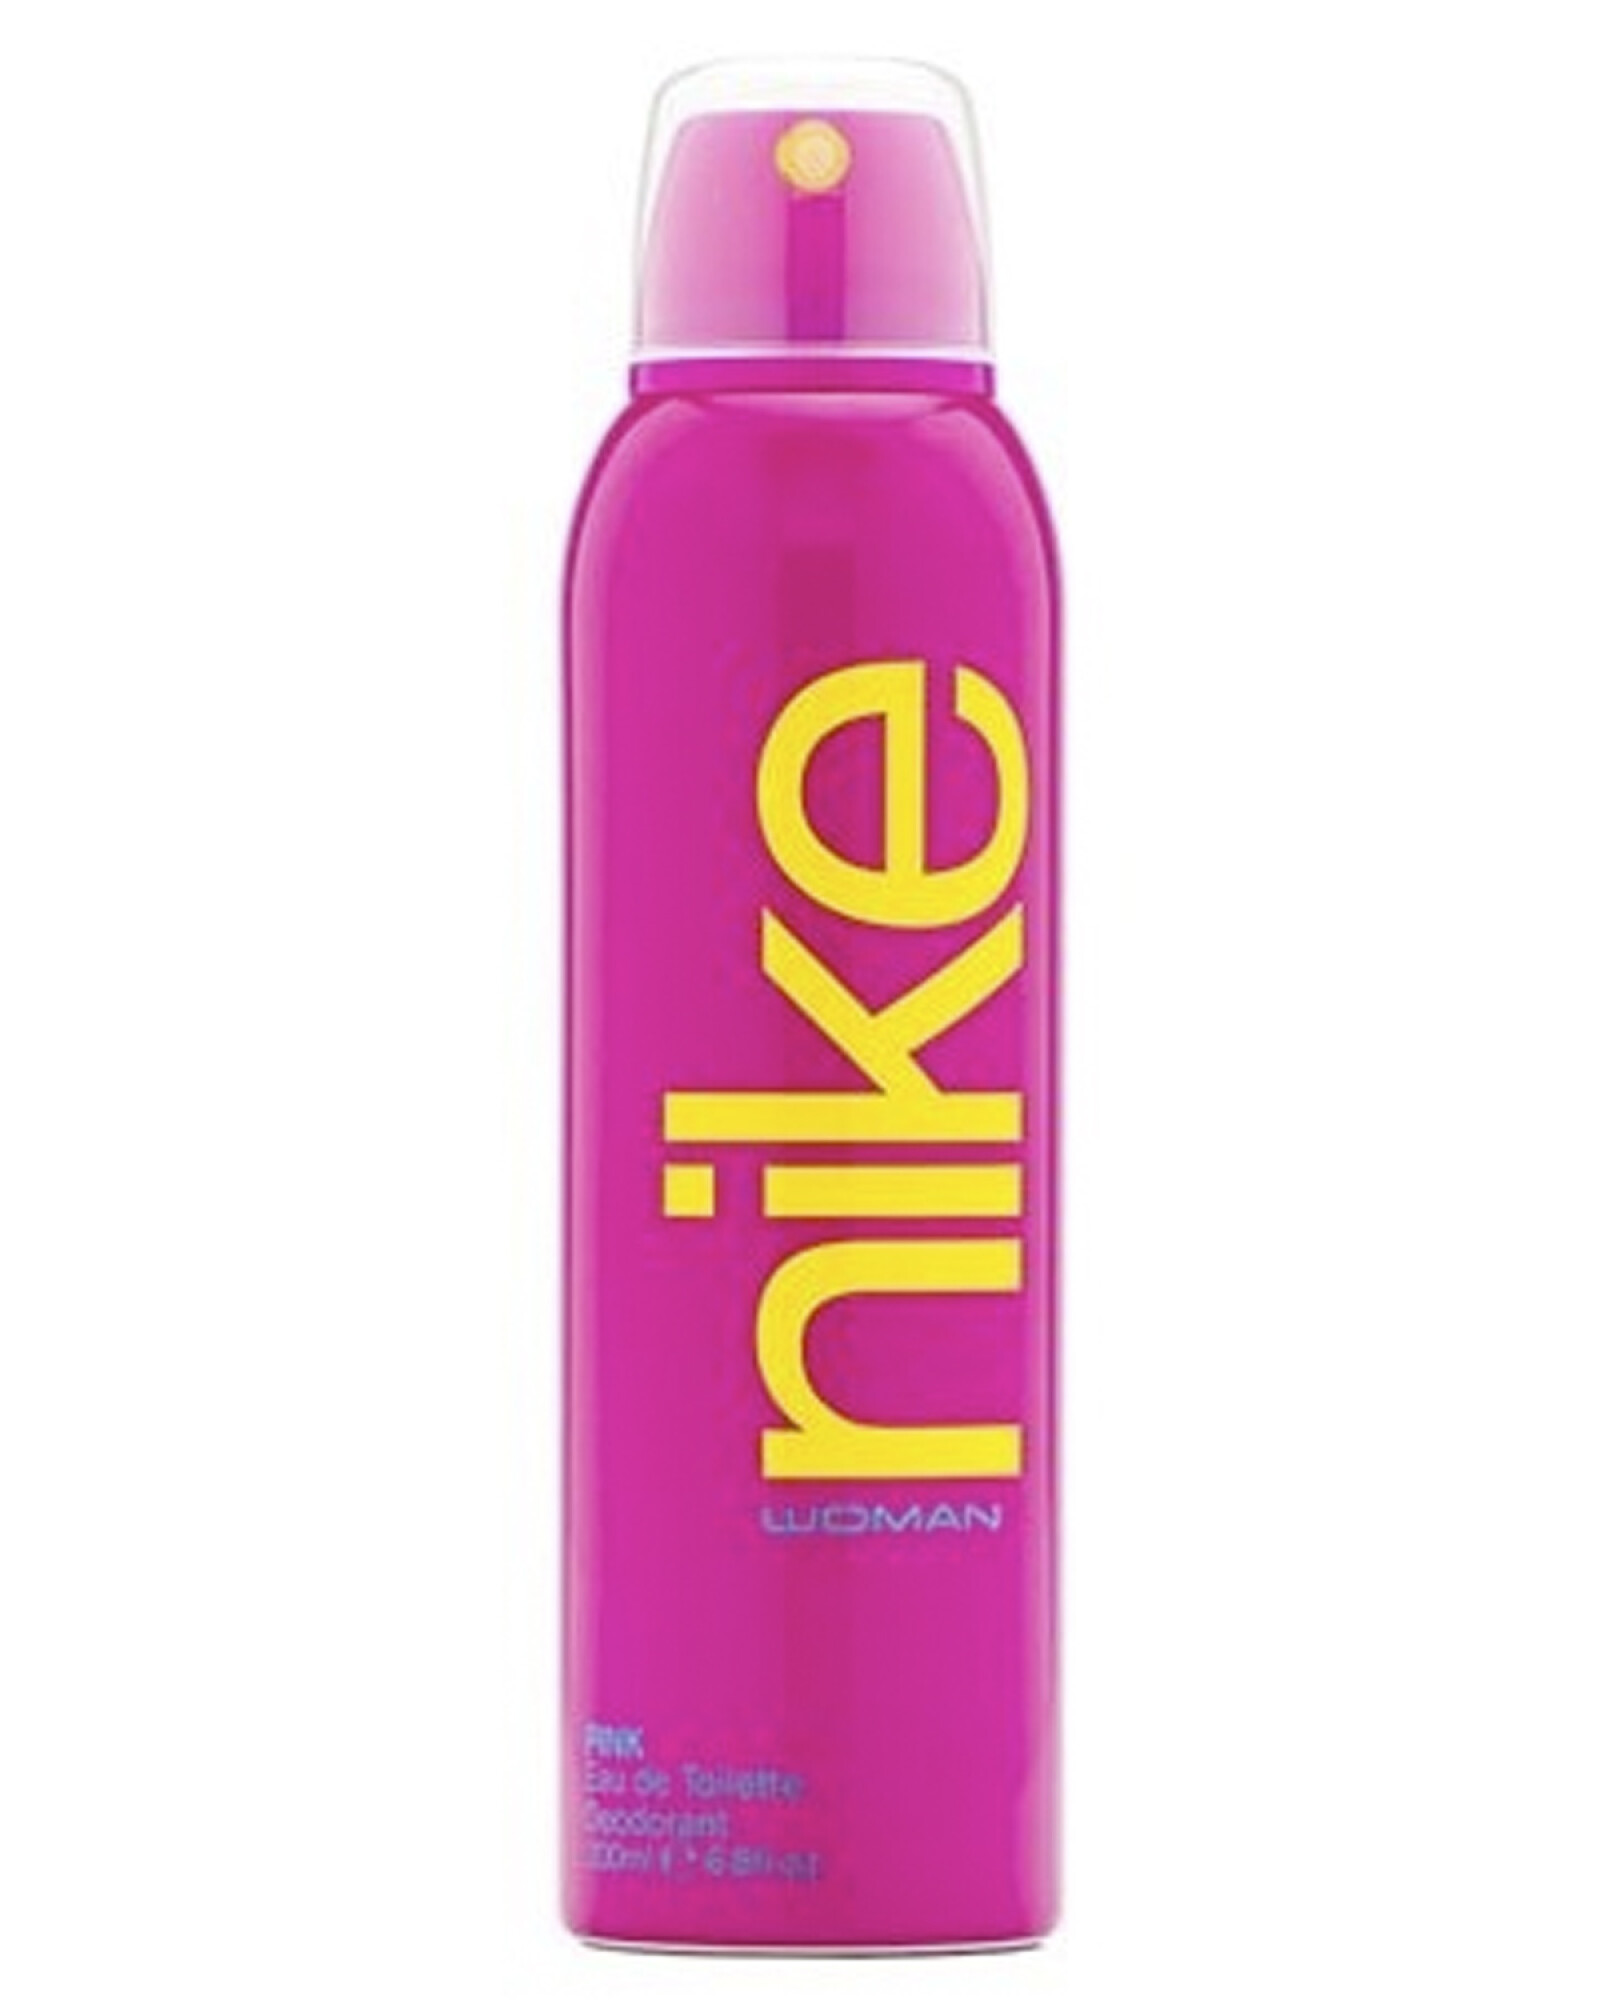 plato Melbourne Preceder Desodorante en spray Nike Pink Woman 200ml Original — Electroventas